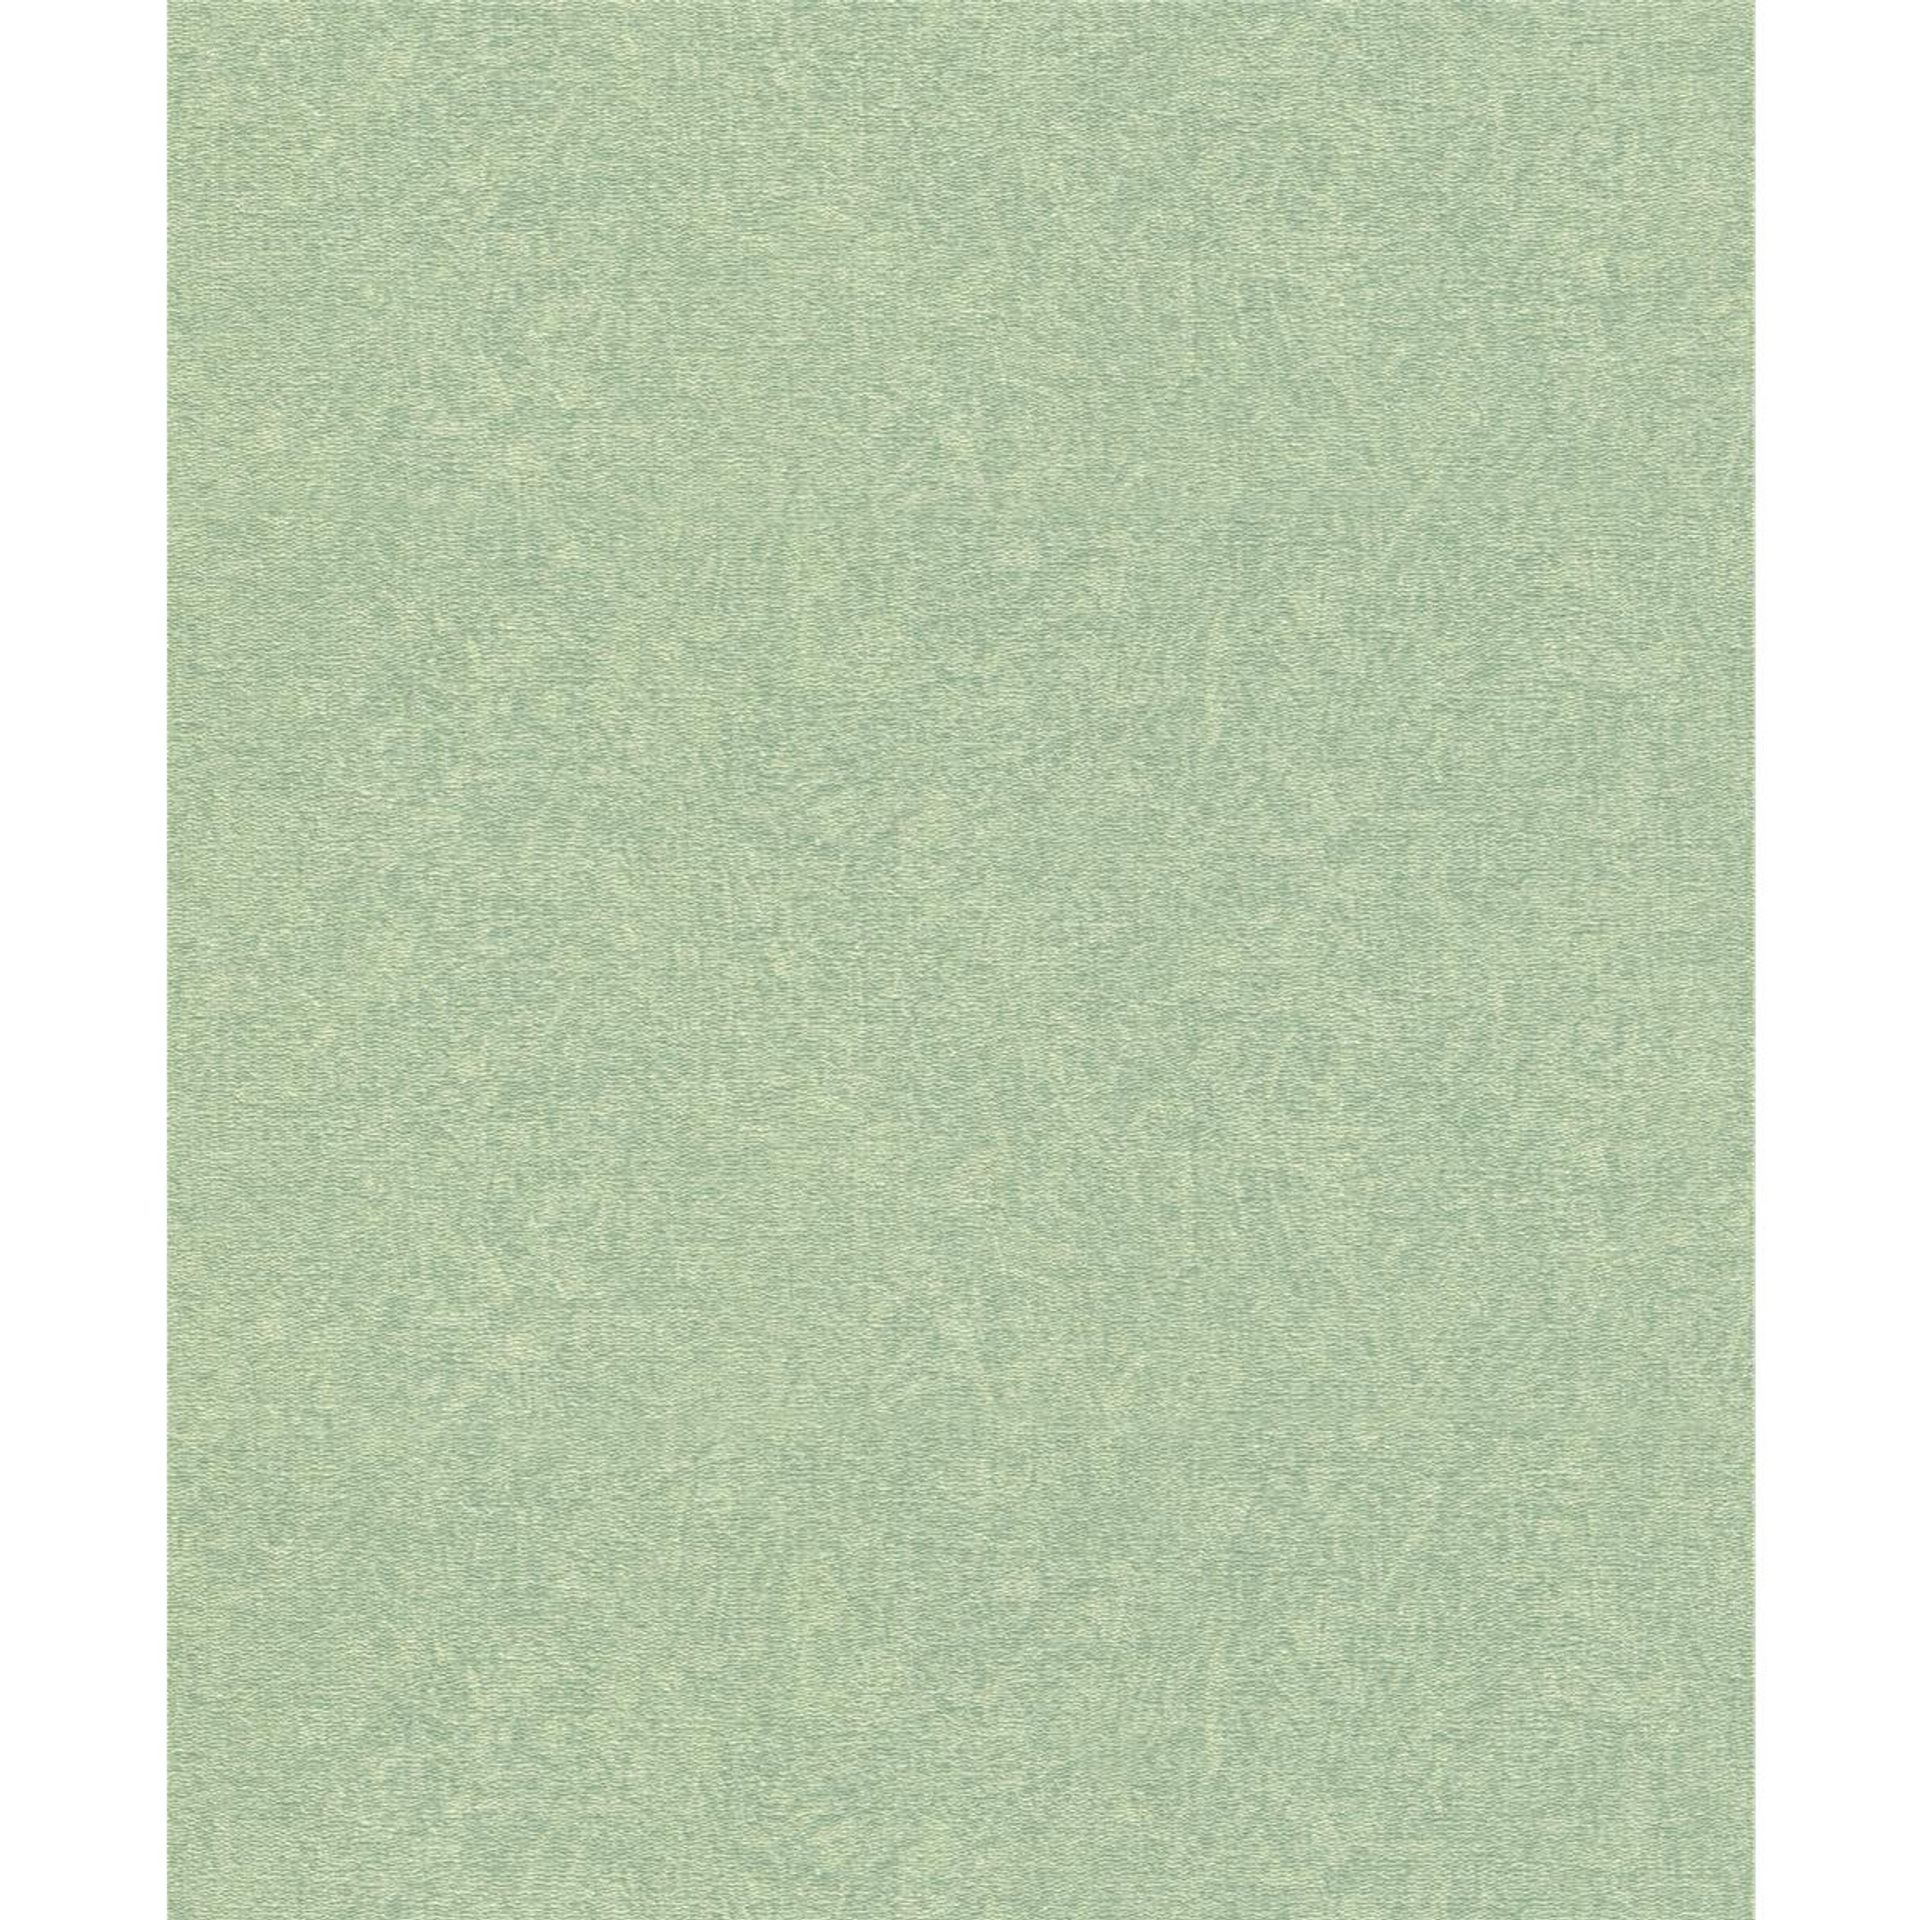 Tapete Basic uni Vinyltapete Jadegrün ansatzfrei 53 cm x 10,05 m